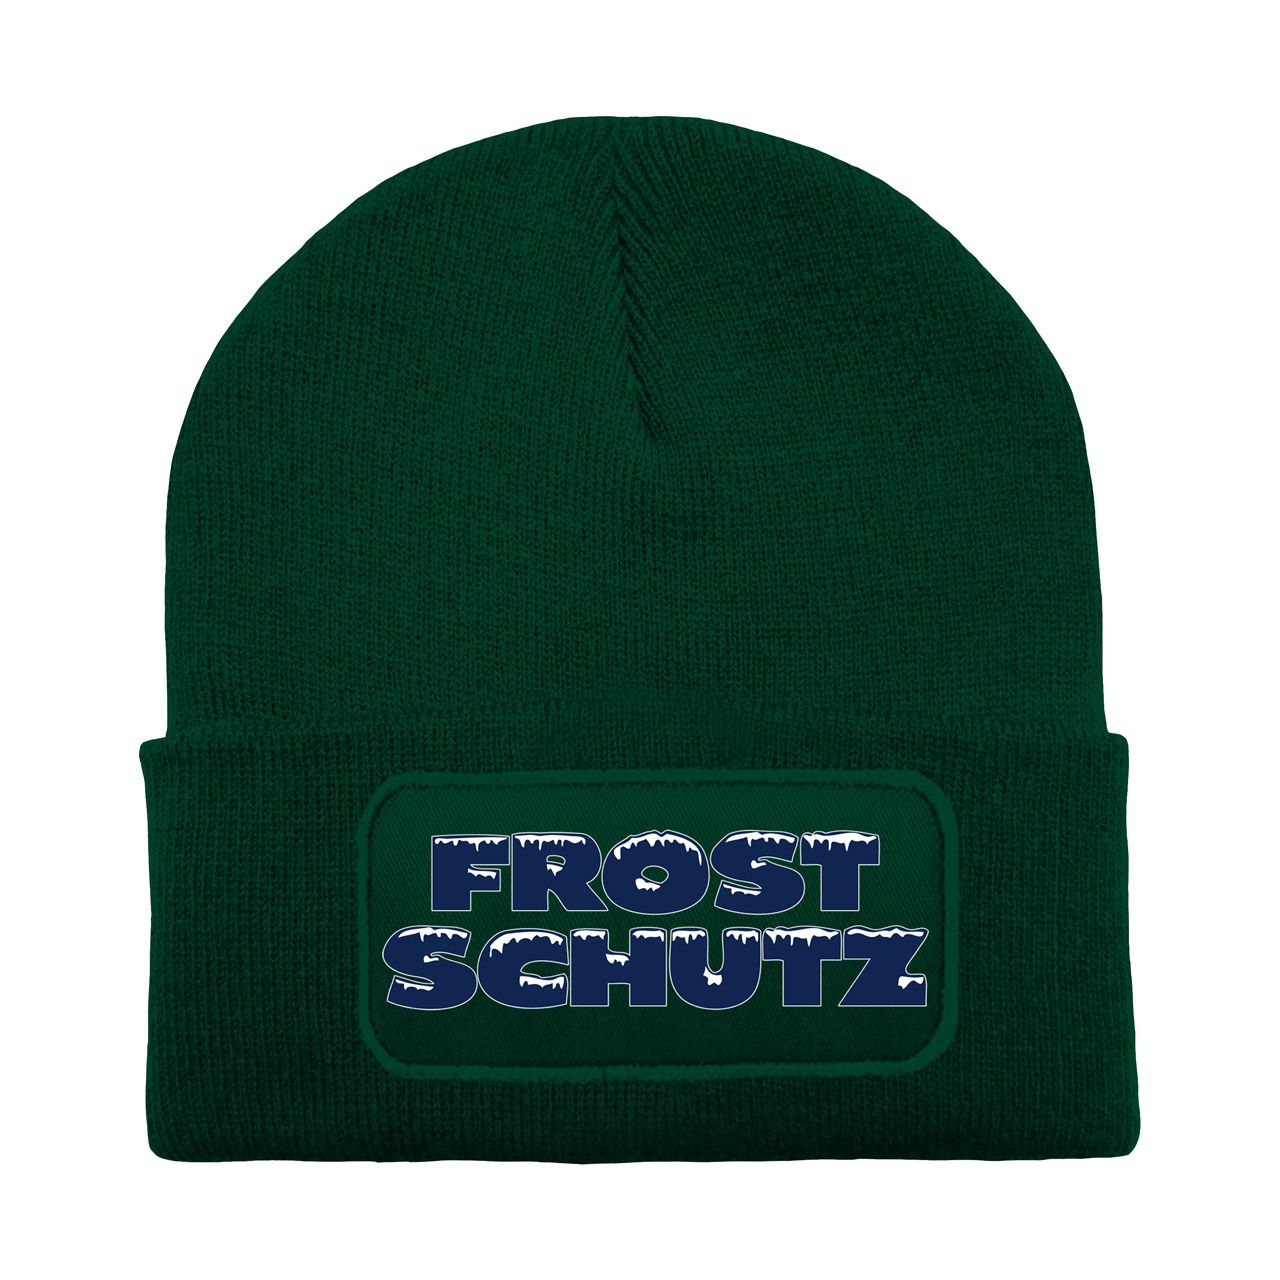 Frostschutz Mütze Patch eckig dunkelgrün